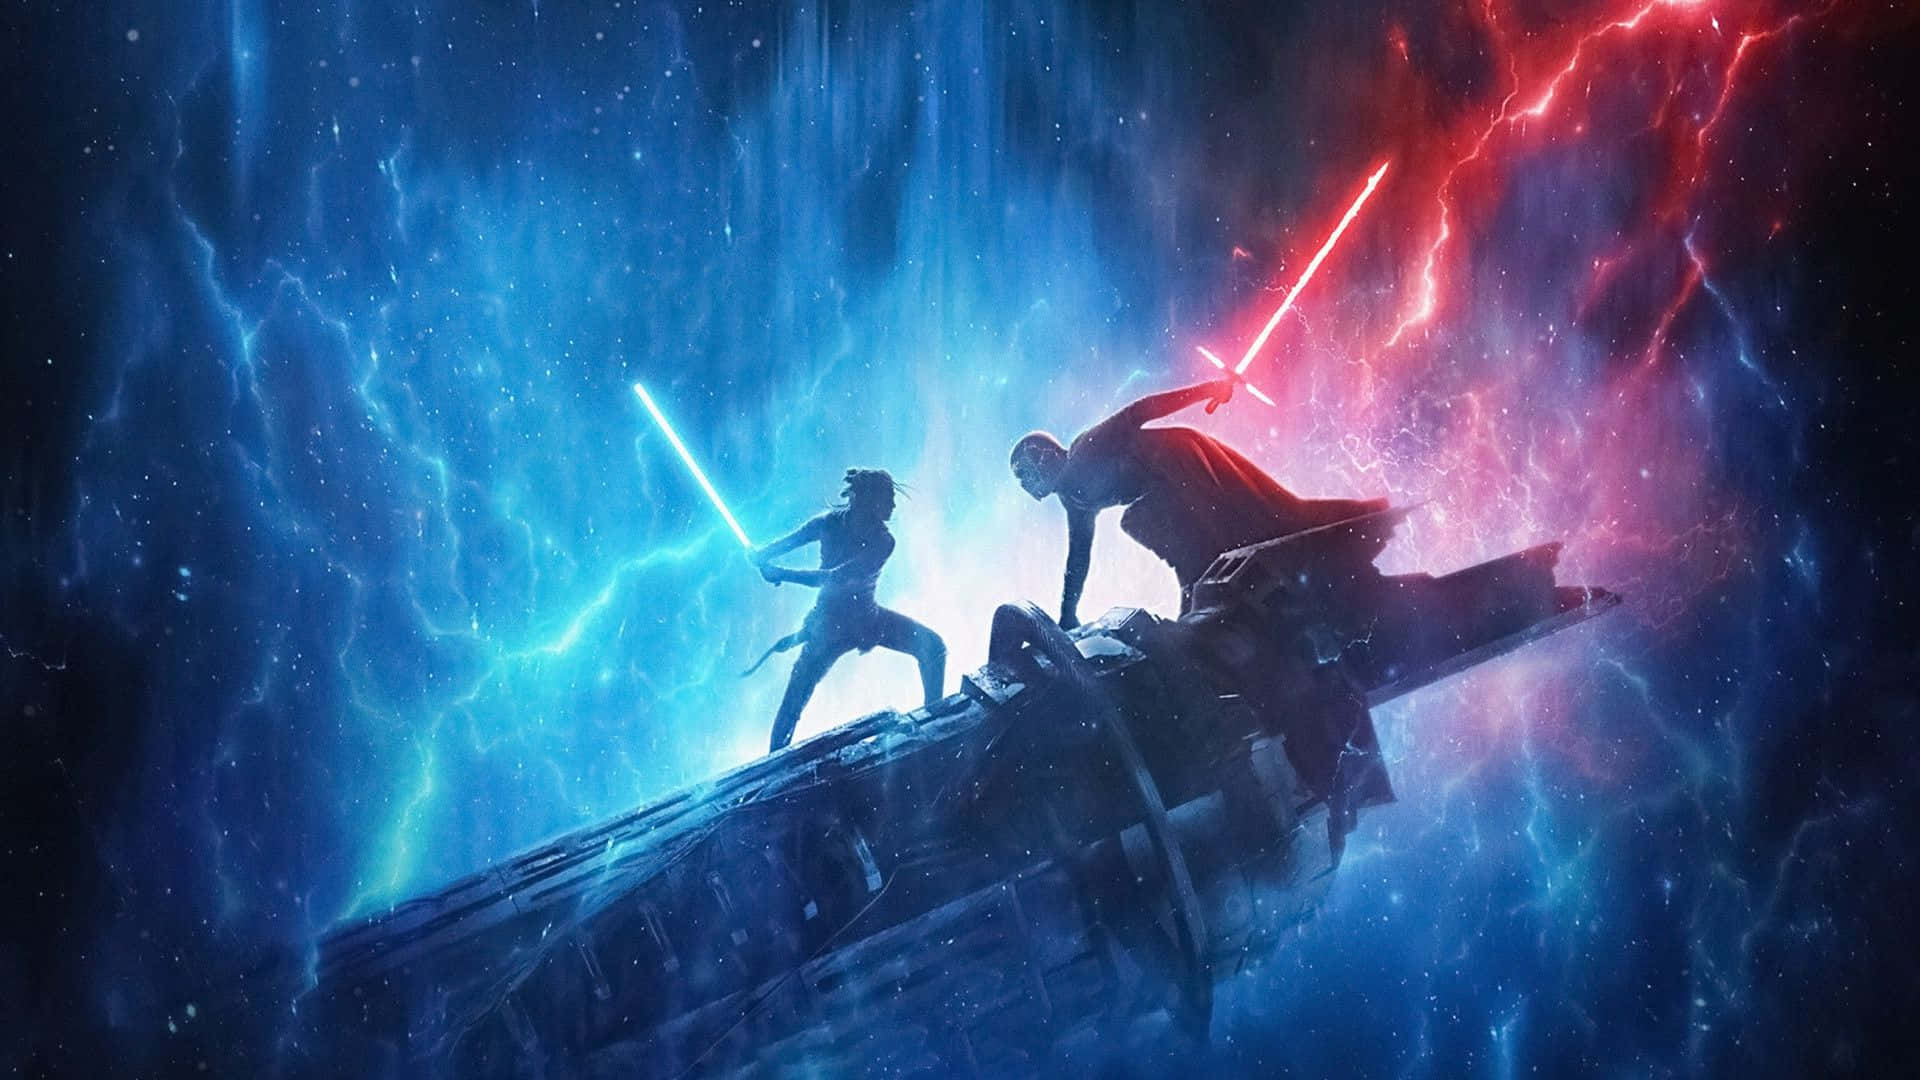 The Star Wars Galaxy Wallpaper